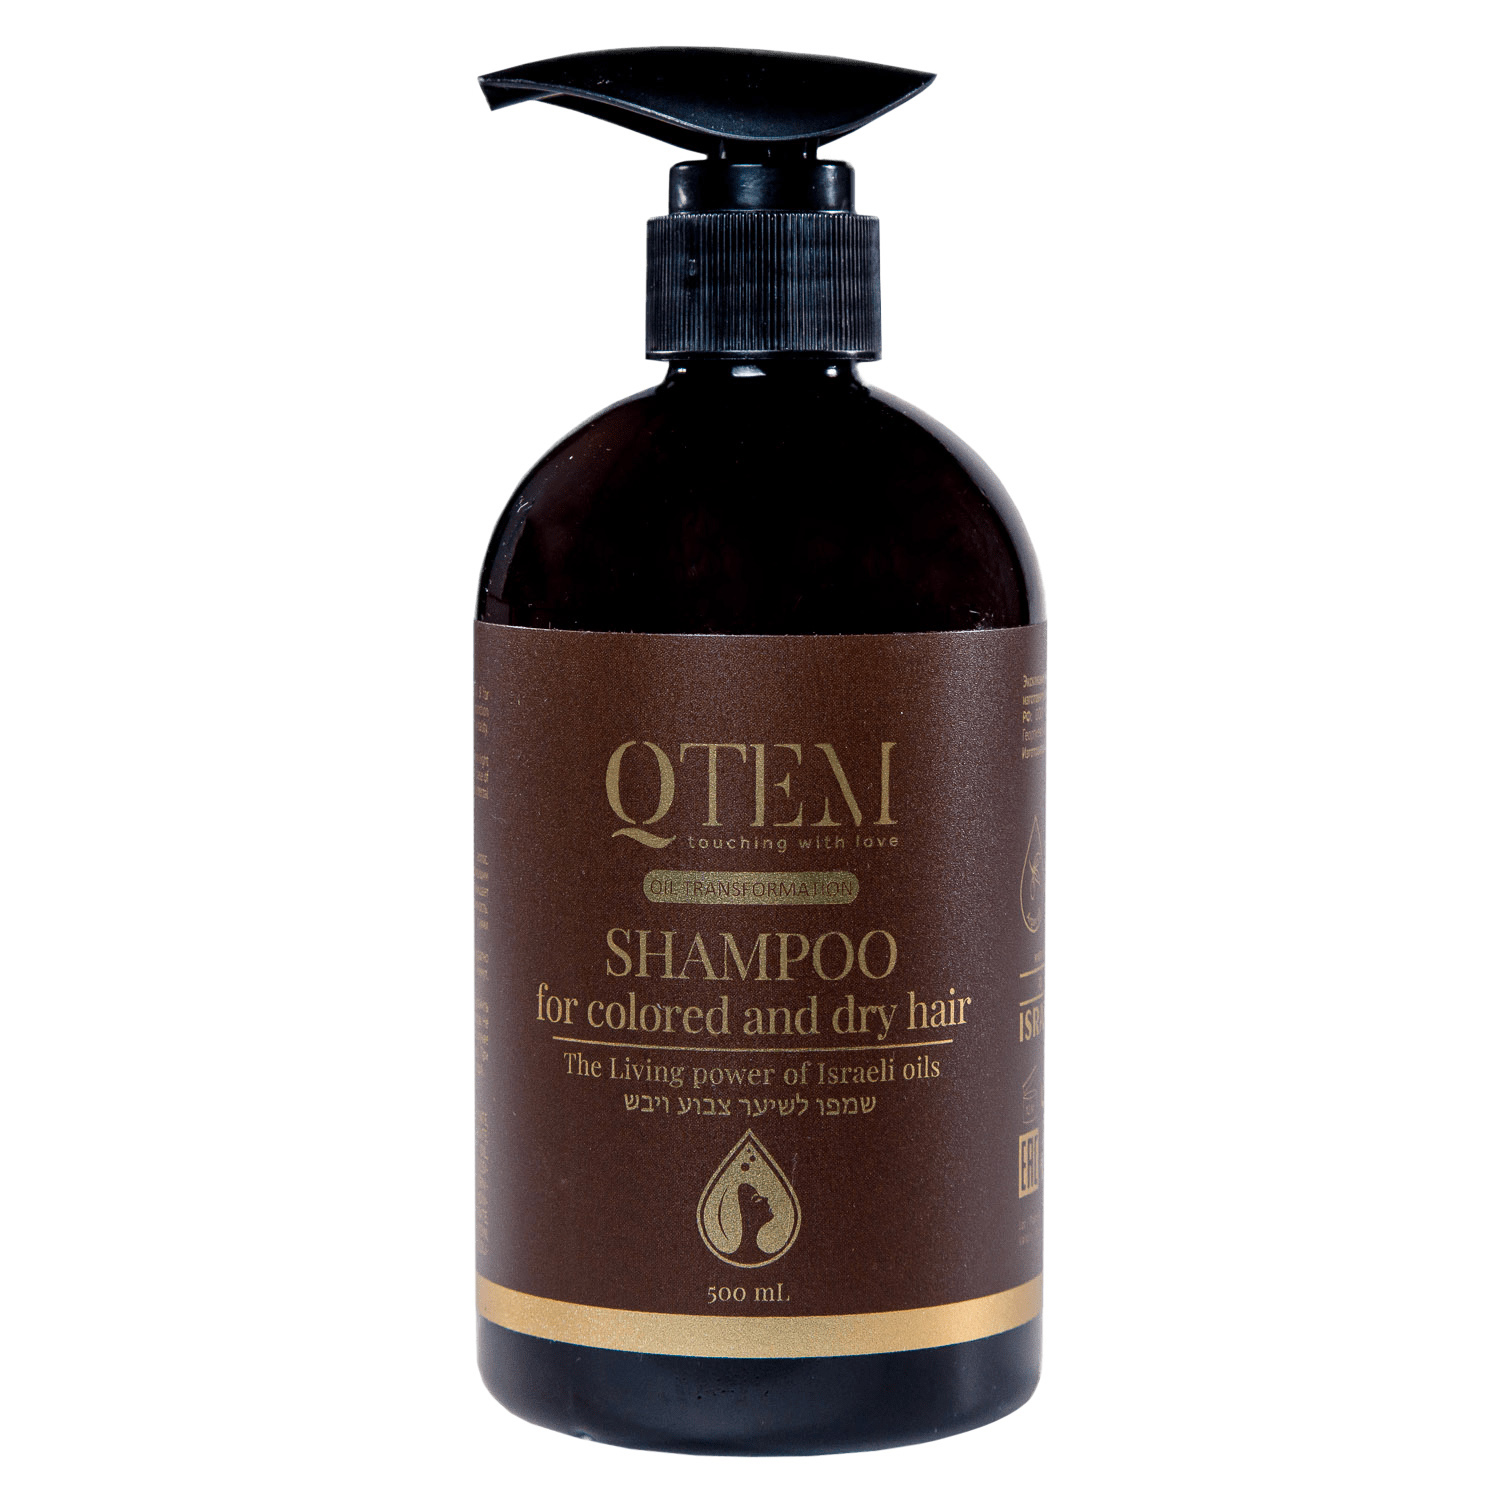 Qtem Шампунь для окрашенных и сухих волос, 500 мл (Qtem, Oil Transformation) цена и фото